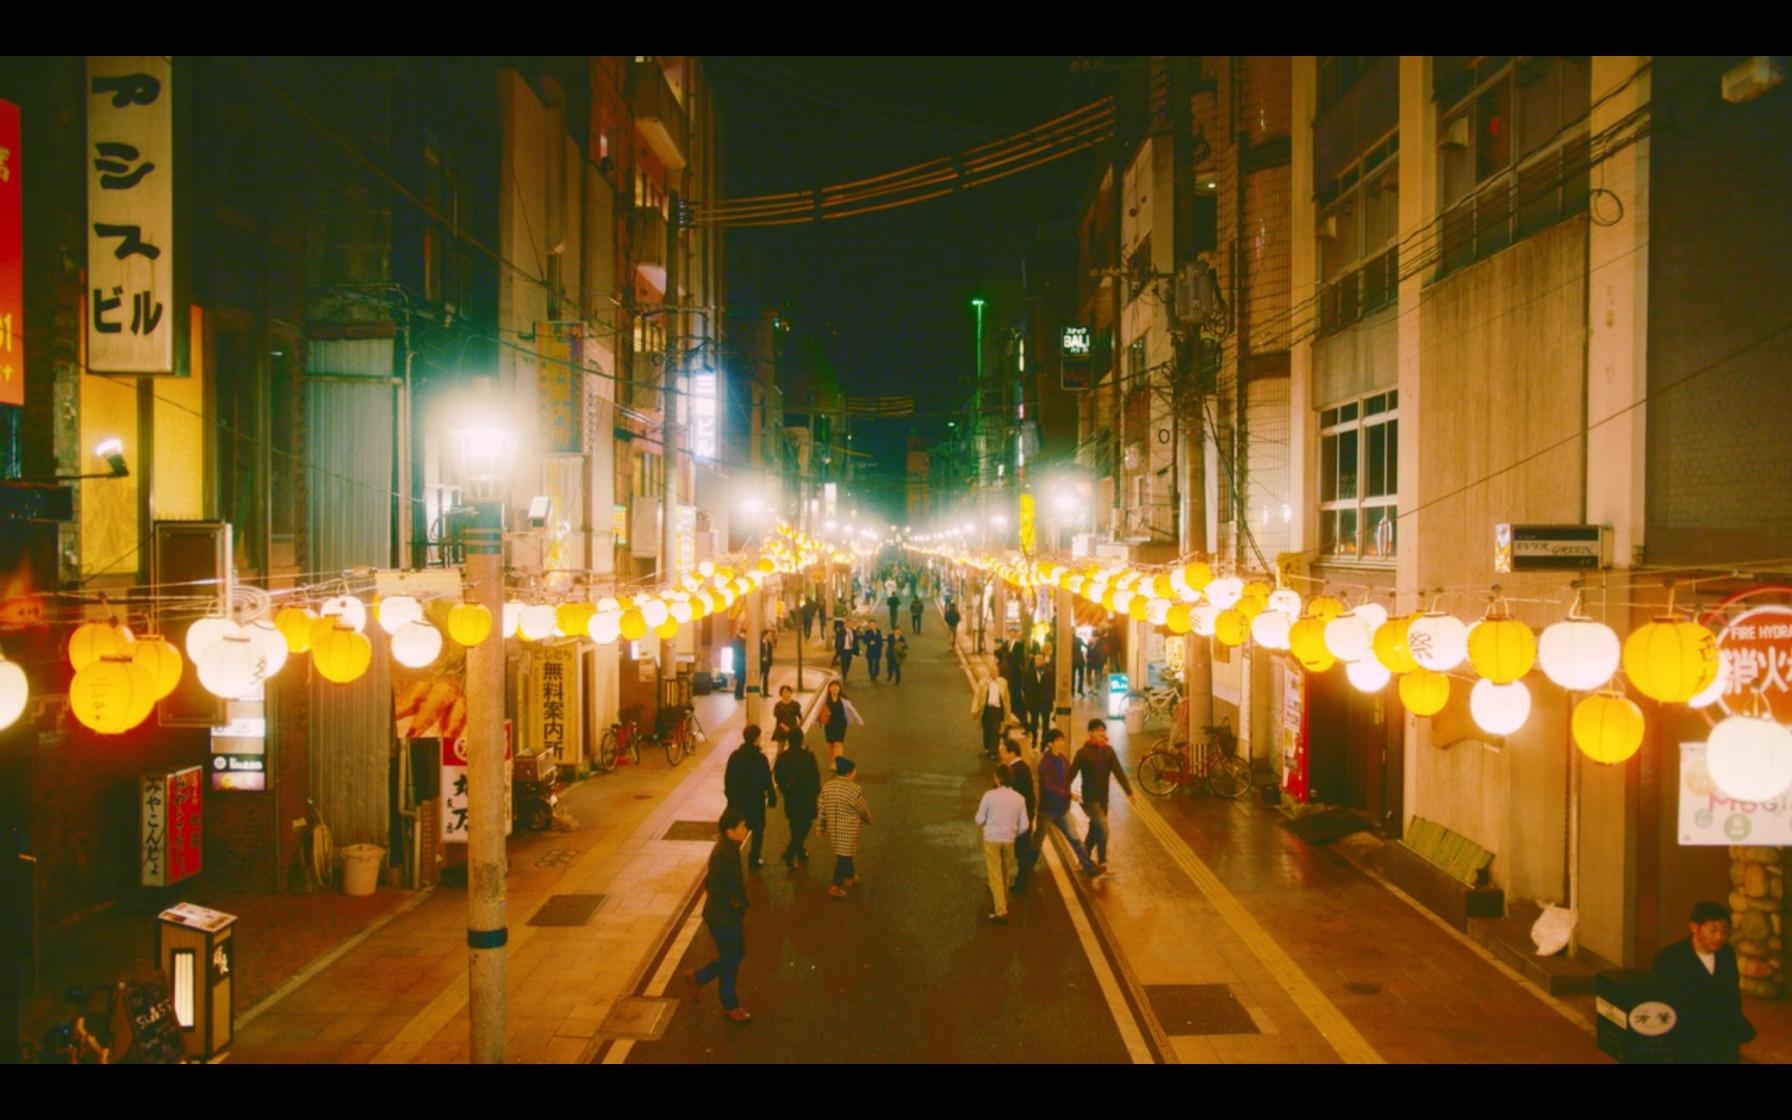  【1日目】宮崎最大の歓楽街 ニシタチでディナー 